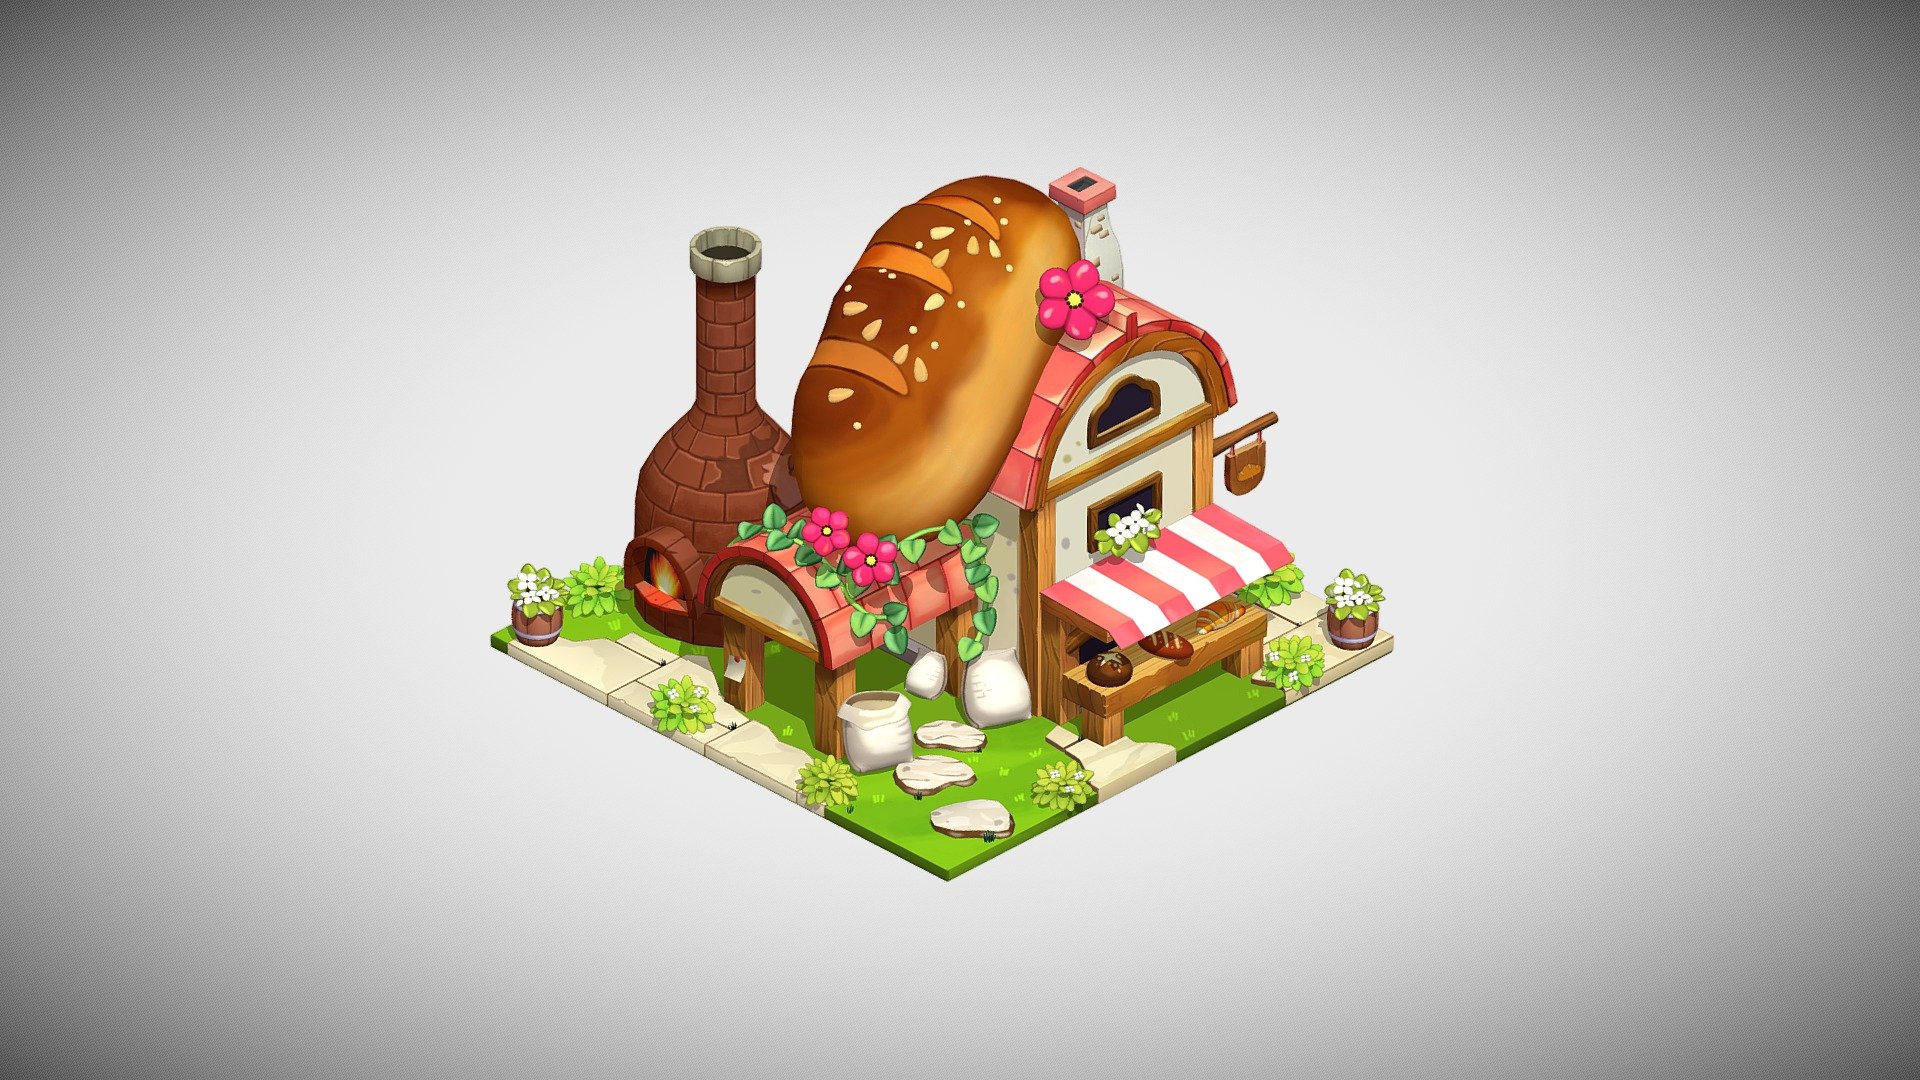 A bakery house made in Blender. Fully hand-painted in Blender and Gimp.
Original concept art by https://www.artstation.com/artwork/48Nkdk - Bakery House - 3D model by Yana Melnyk (@YanaMelnyk) 3d model